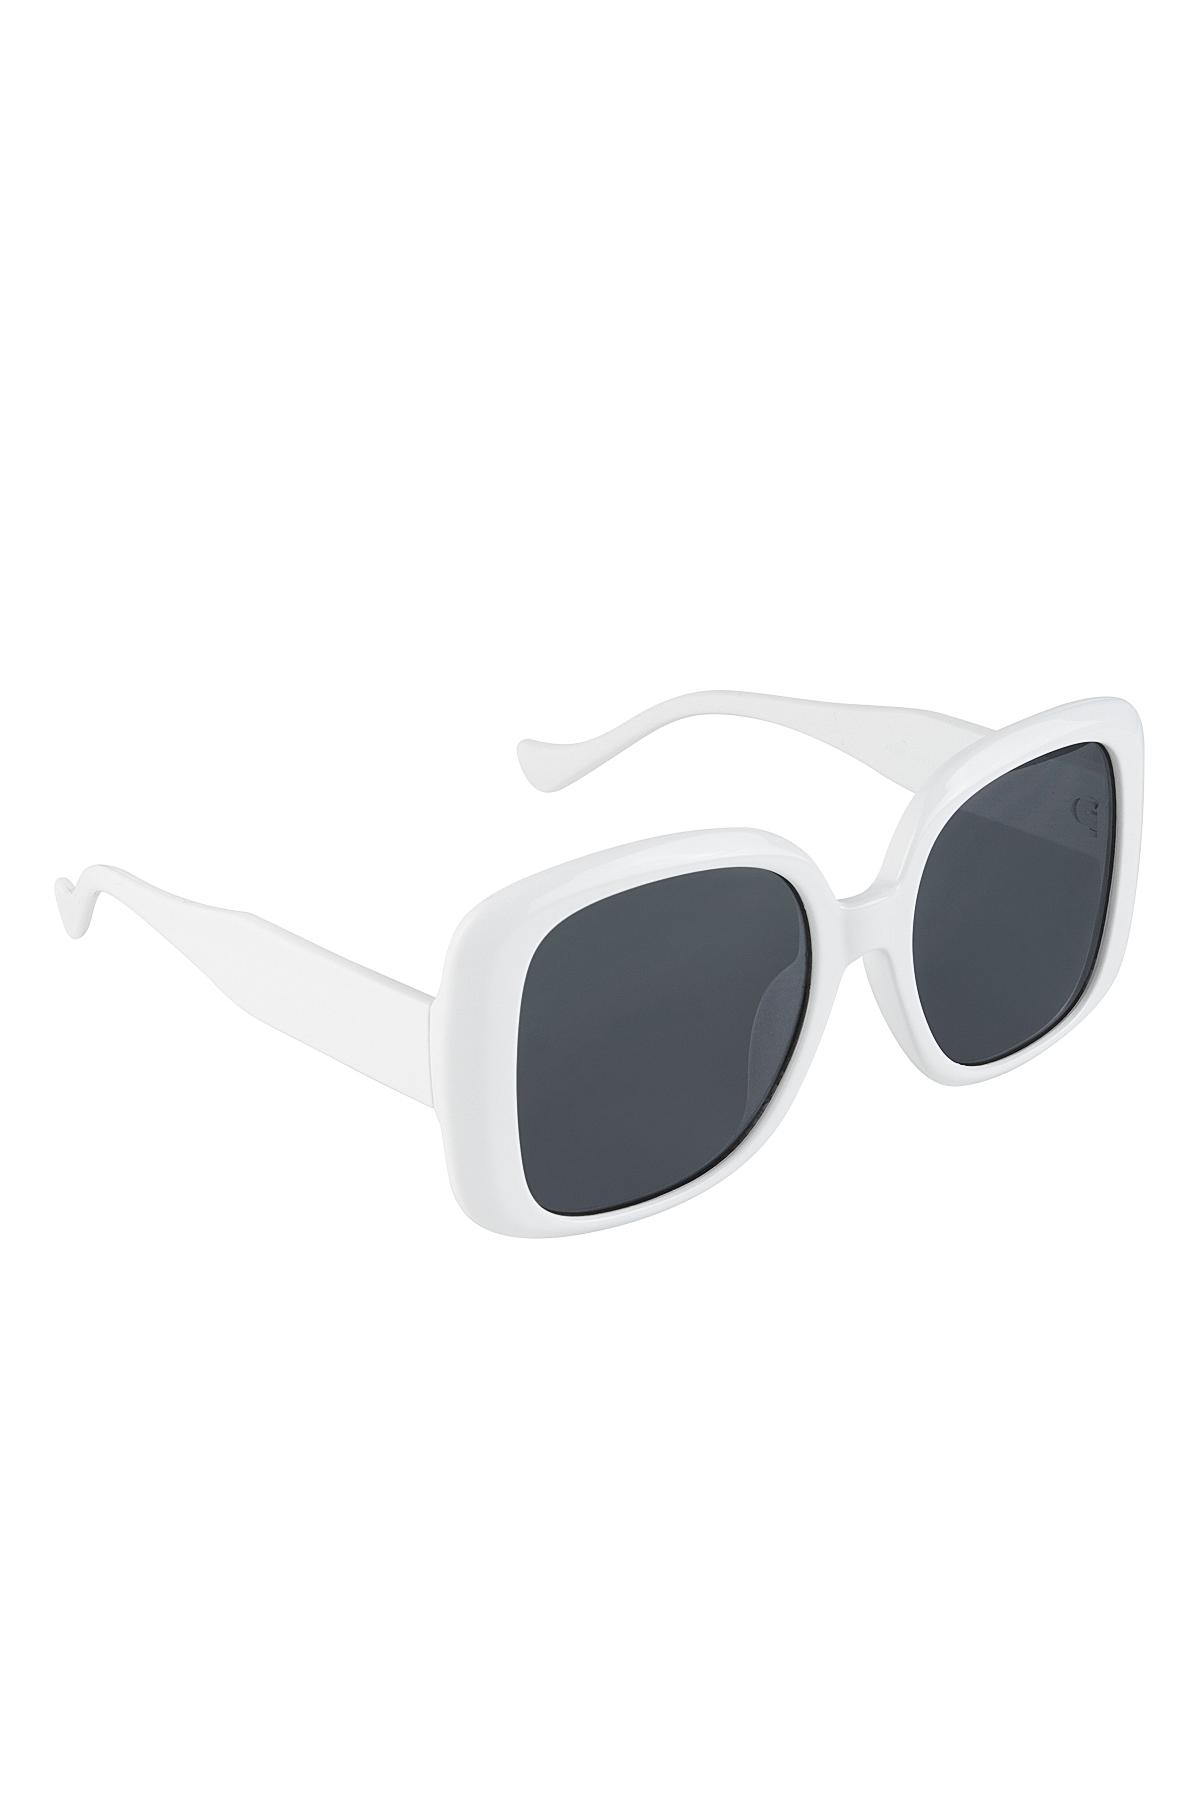 Temel güneş gözlüğü White PC One size 